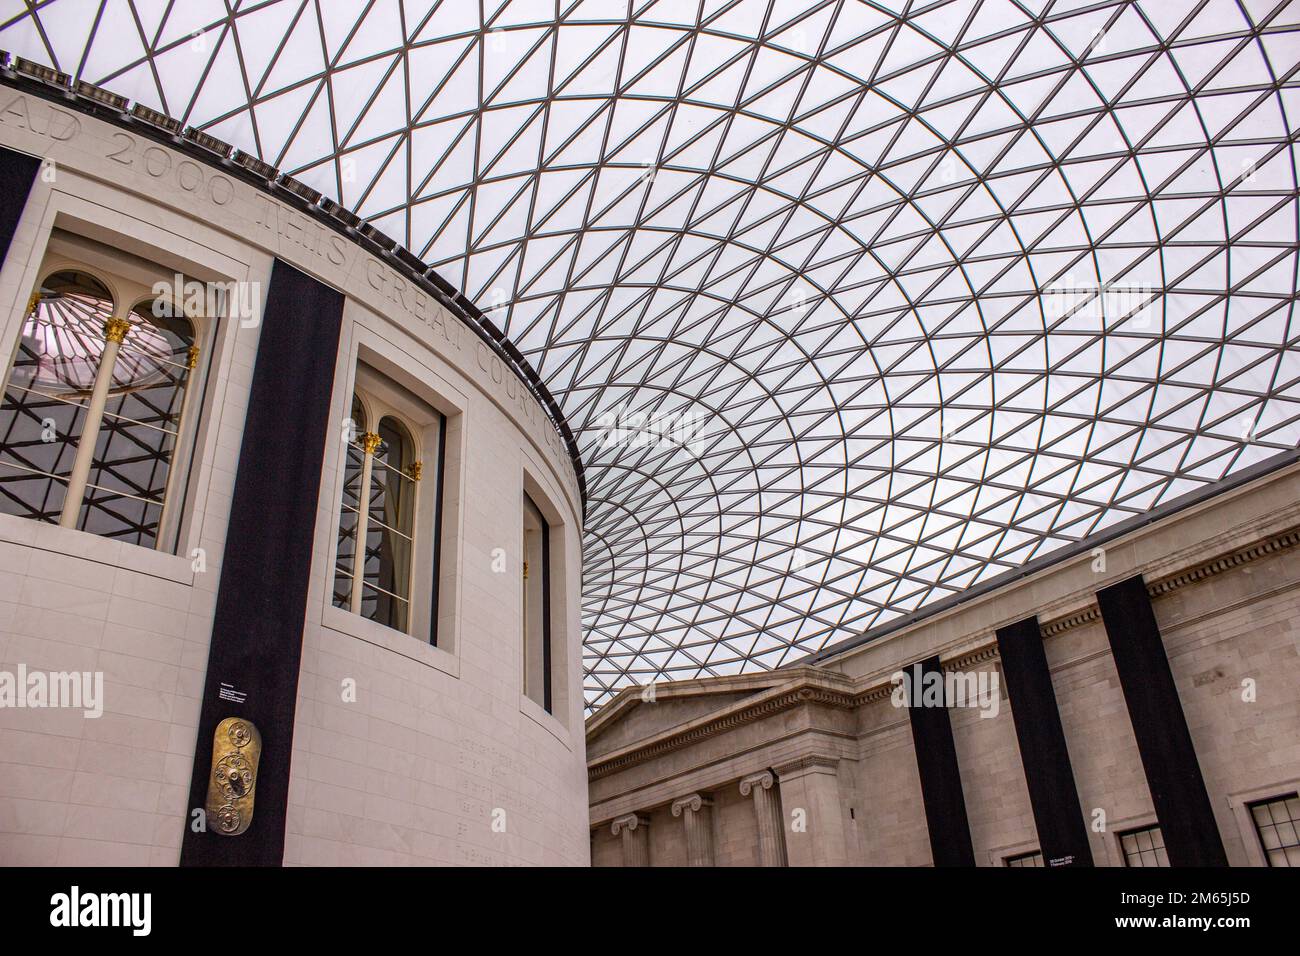 Innenansicht des Great Court im British Museum, einem öffentlichen Museum, das sich der Geschichte, Kunst und Kultur der Menschen in London widmet. Stockfoto